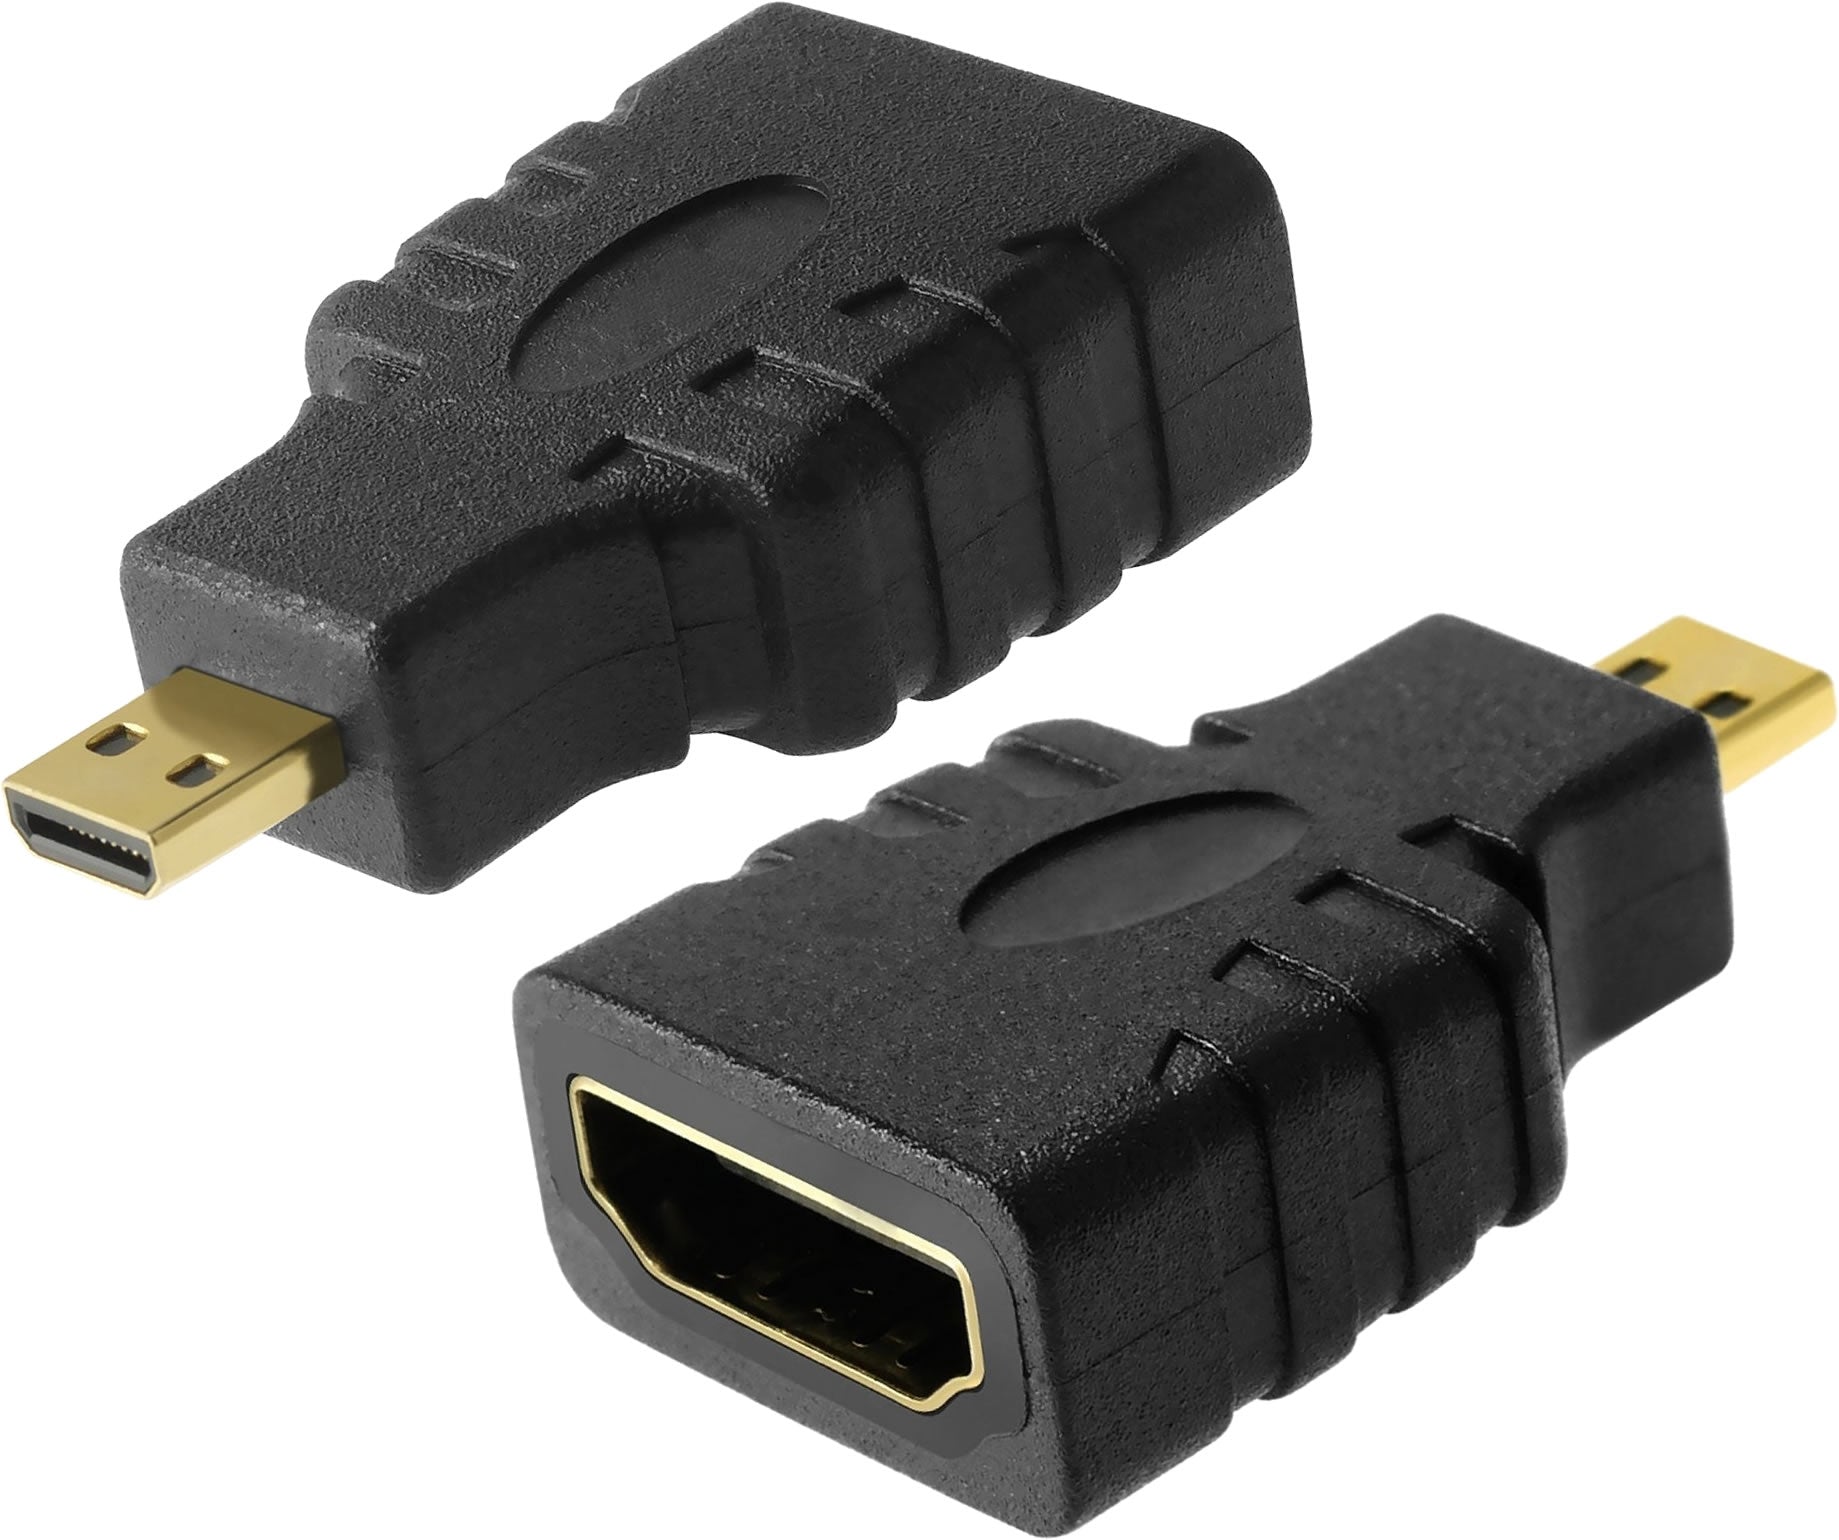 16-6385 HDMI Female to Micro HDMI Male Adapter